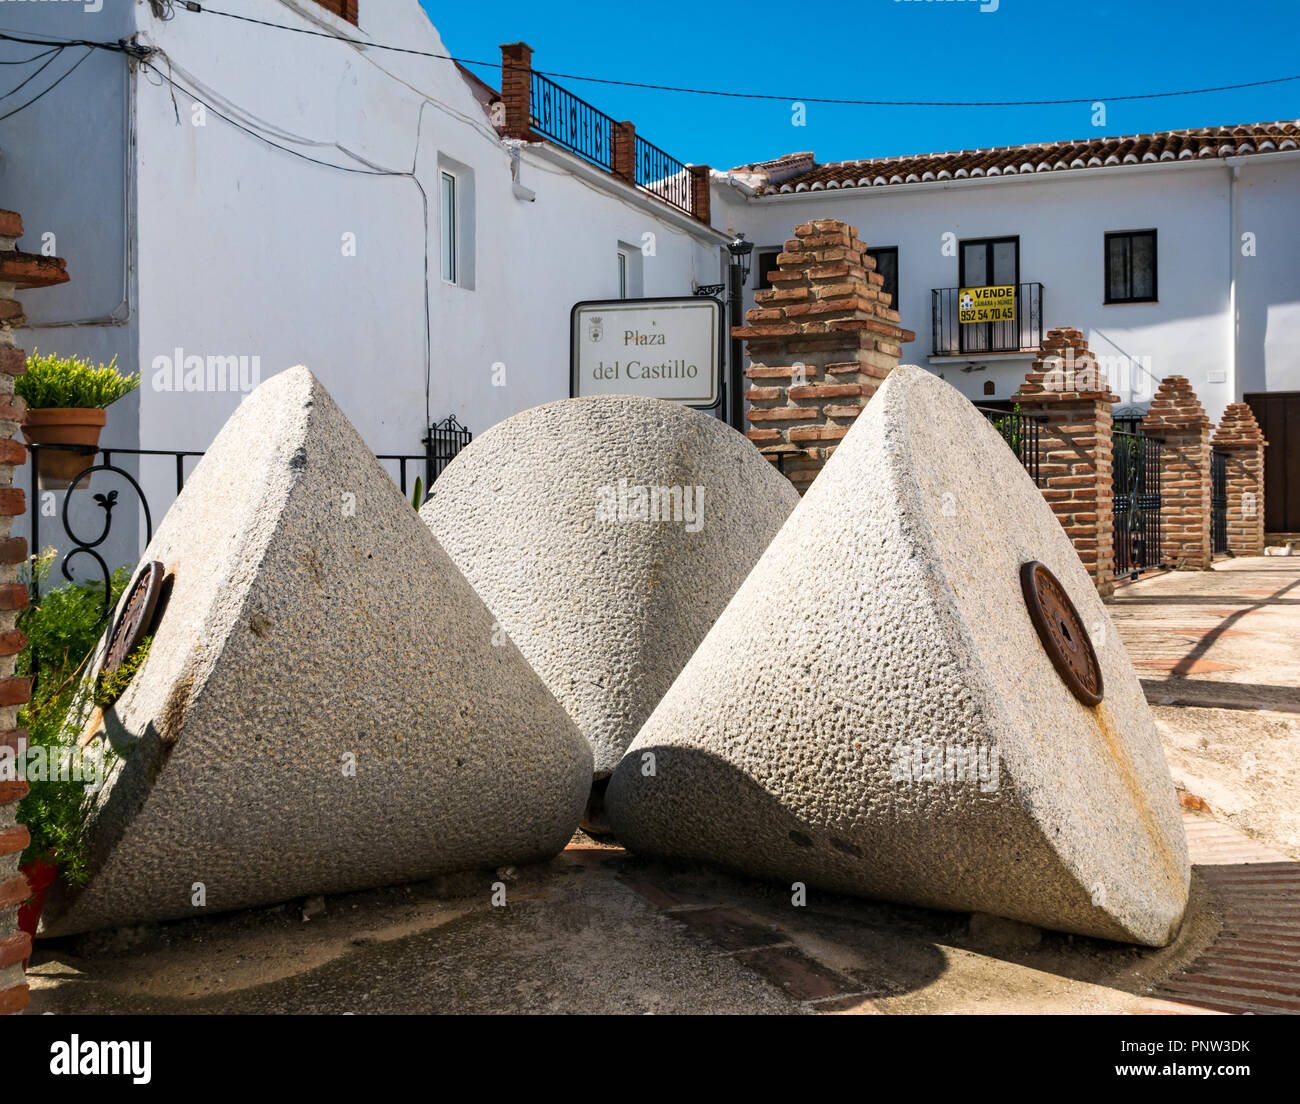 Ungewöhnliche alte konischen Oliven Schleifen der Steine, Plaza del Castillo, Canillas de Acietuna, Mudejar route, Andalusien, Spanien Stockfoto